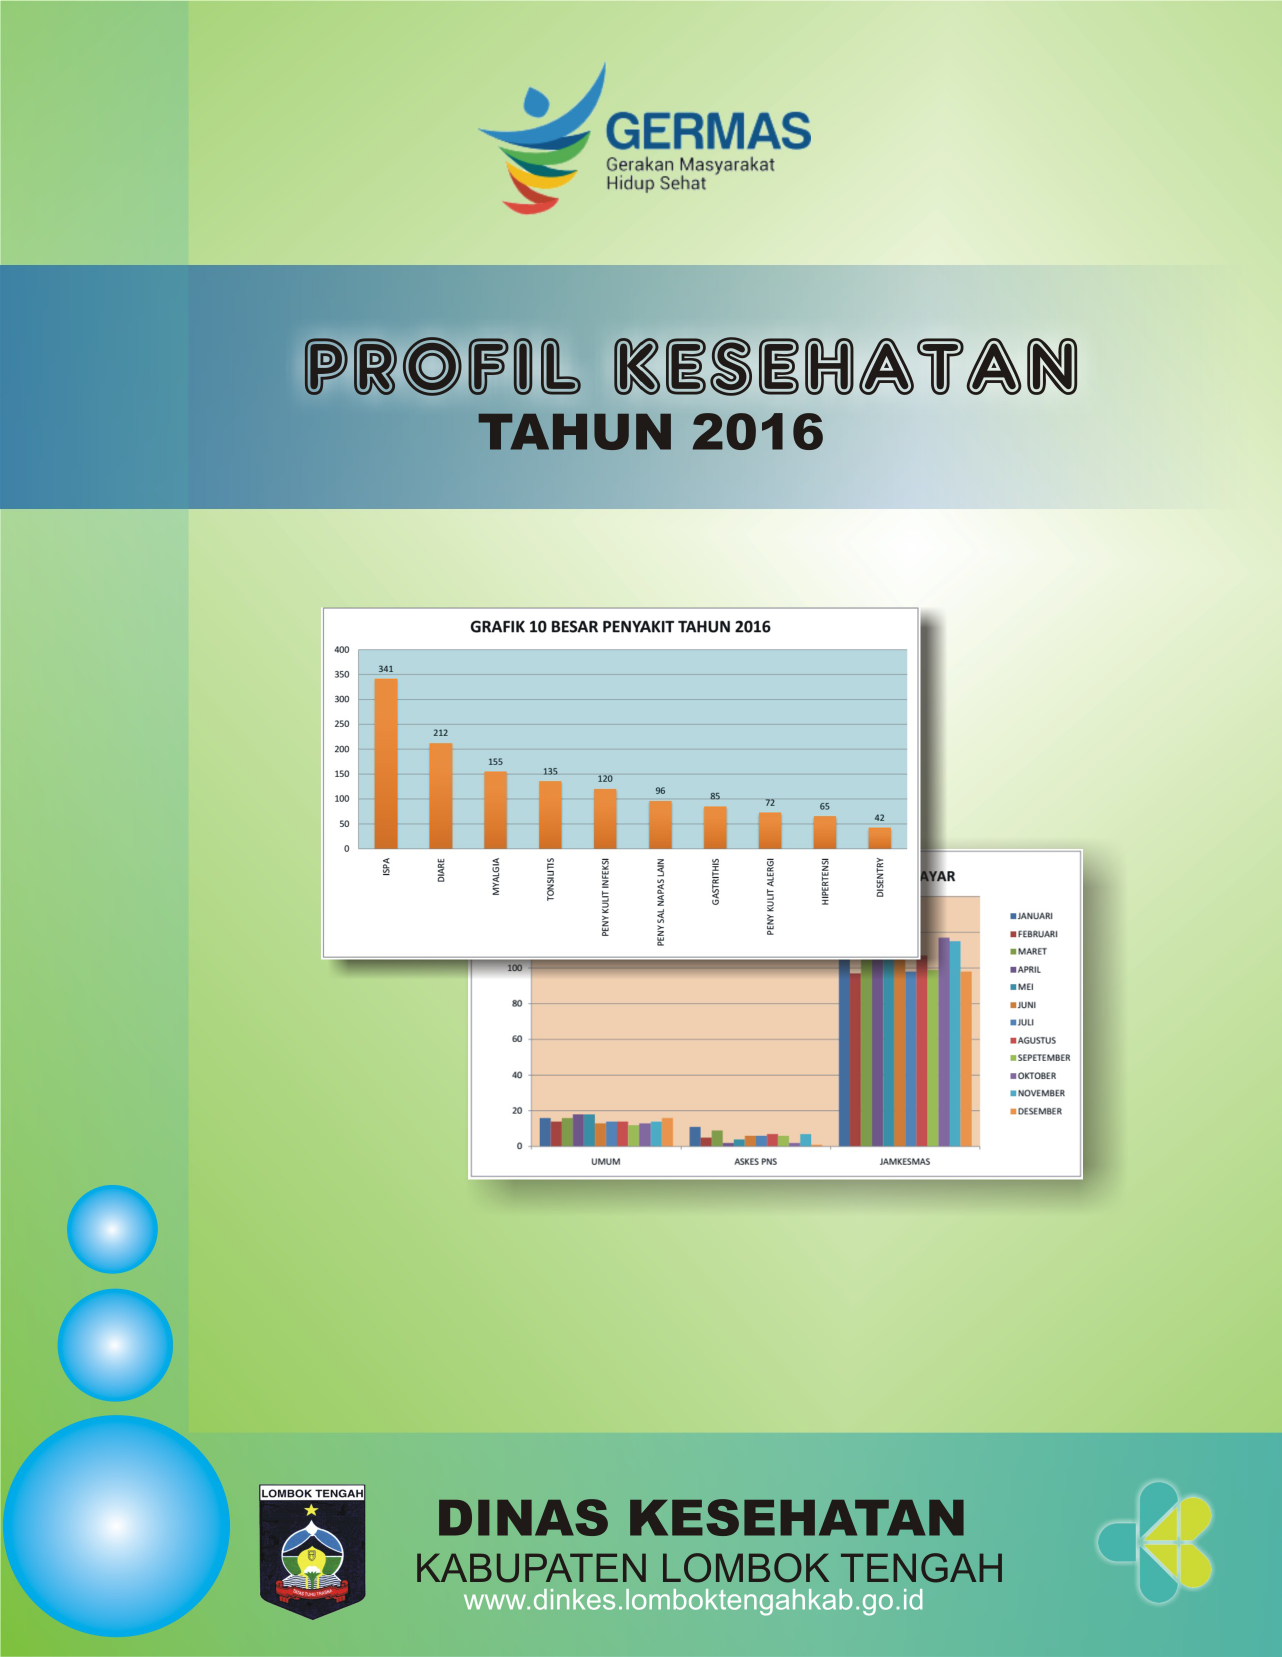 perkenan Nya maka Profil Kesehatan Lombok Tengah 2016 dapat diselesaikan Profil Kesehatan ini merupakan rangkaian penyajian data informasi tentang